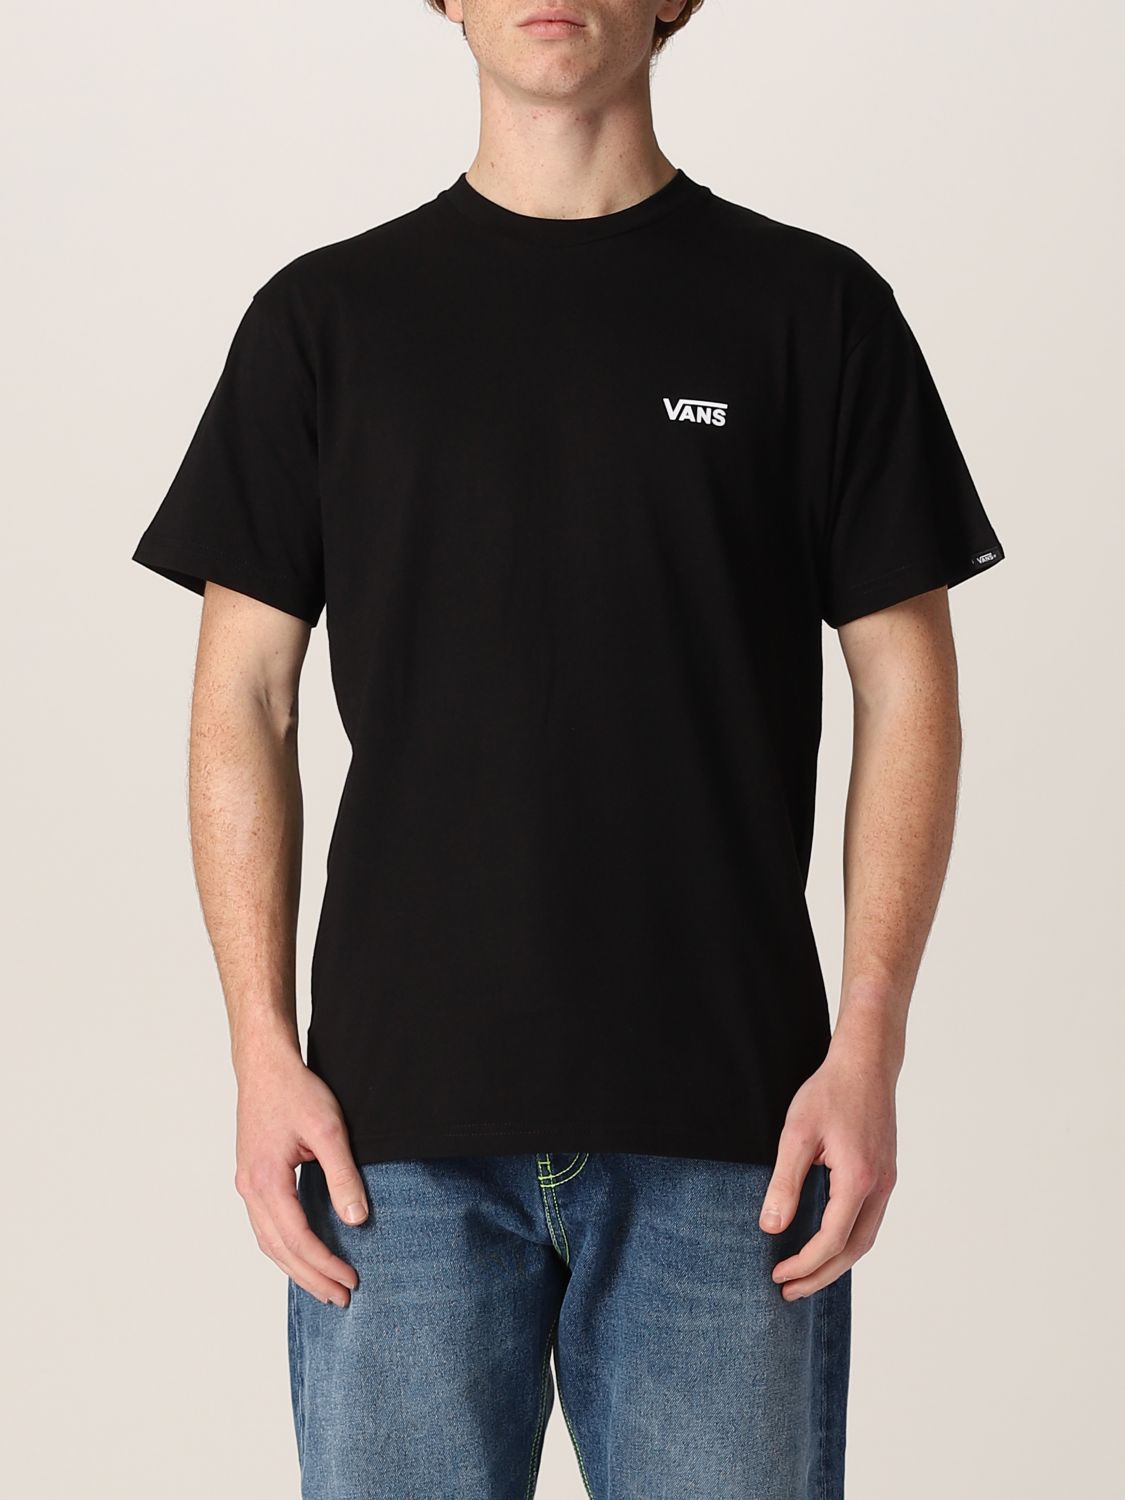 Vans Tシャツ メンズ ブラック Giglio Comオンラインのvans Tシャツ Vn0a54tf